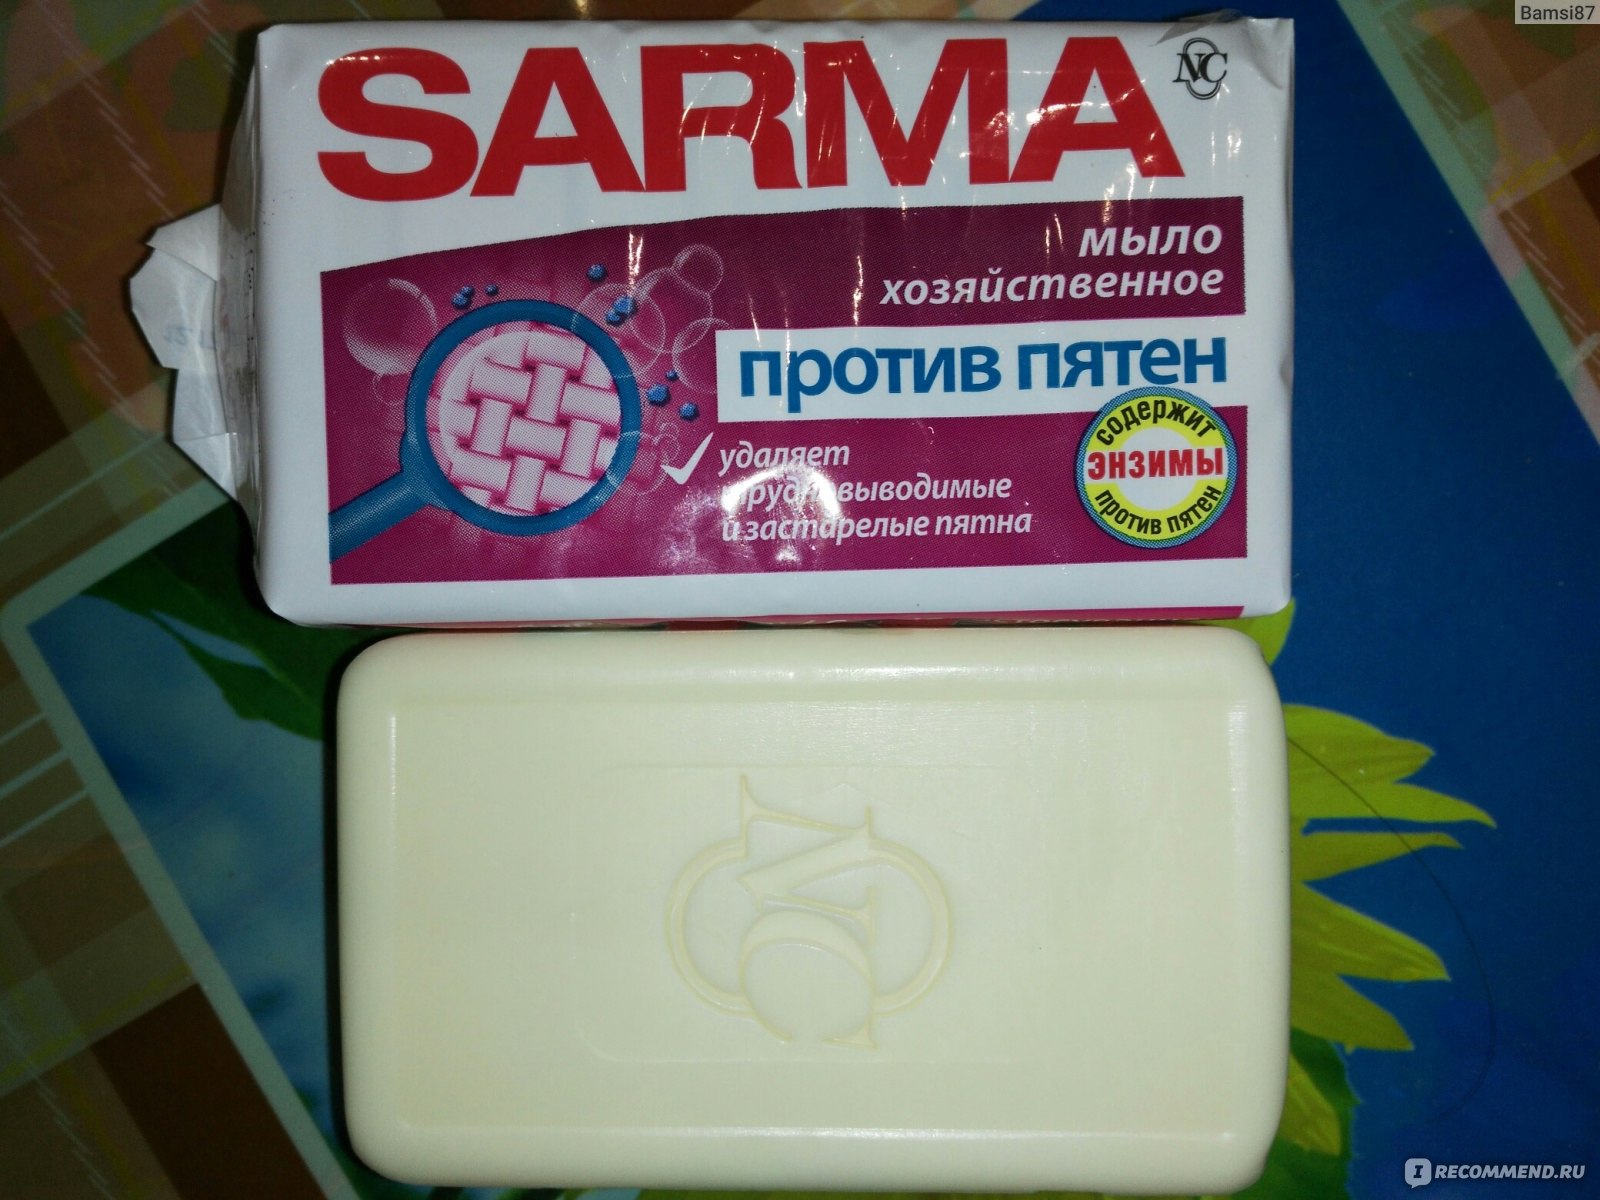 Мыло от пятен Сарма